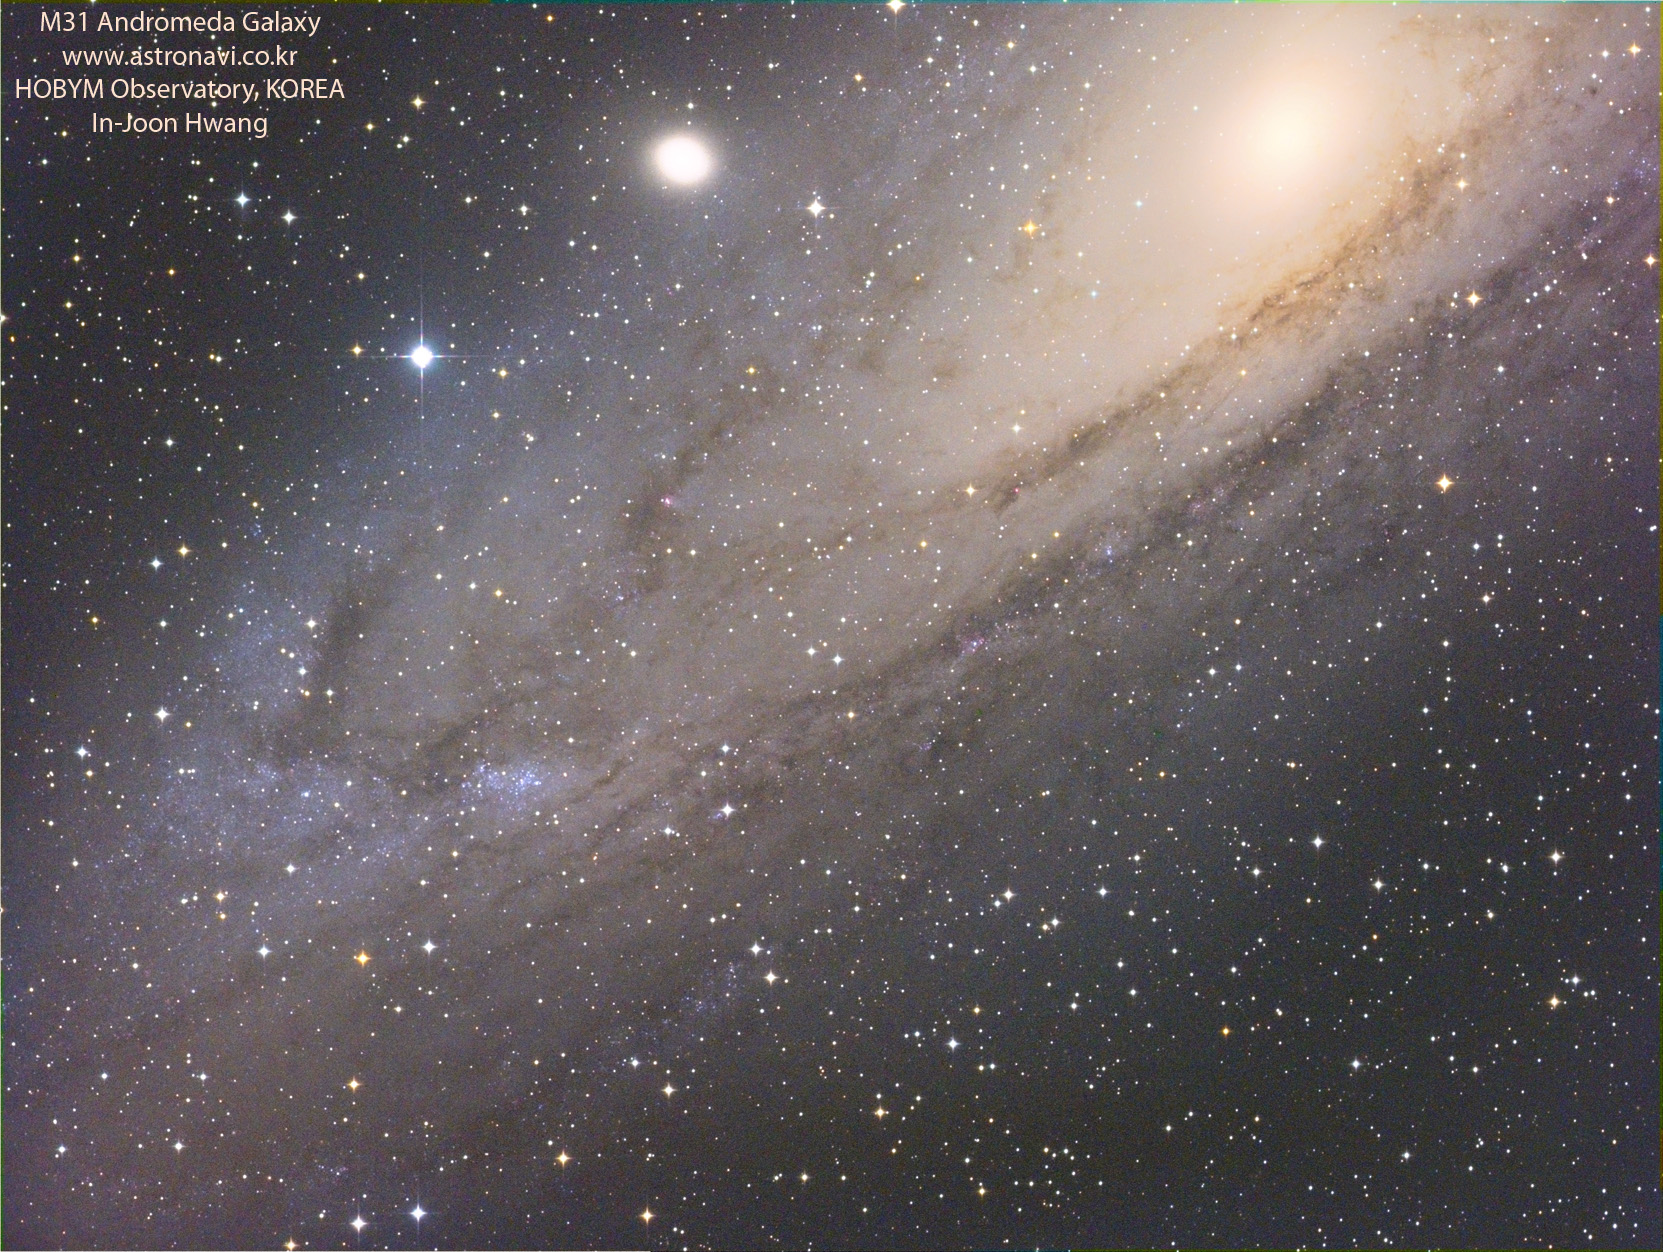 ngc206_XLRGBweb.jpg : NGC206 in Andromeda